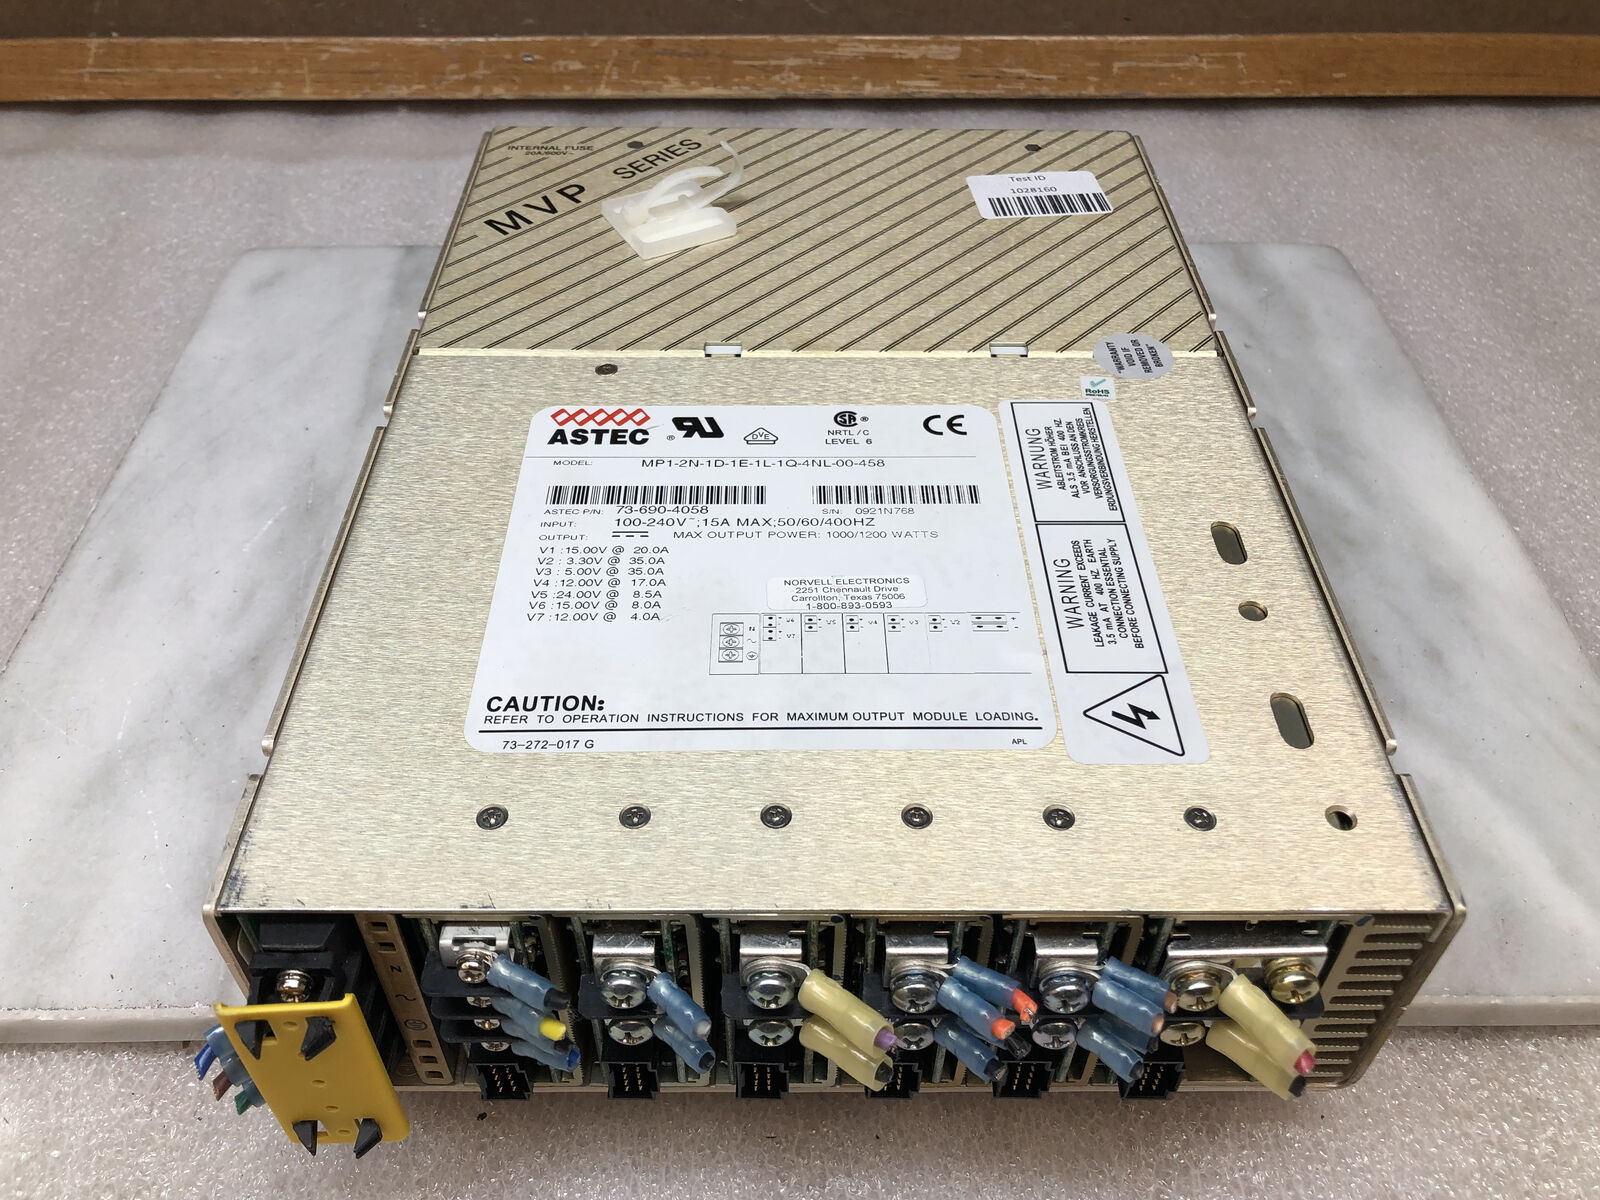 ASTEC MVP Series MP1-2N-1D-1E-1L-1Q-4NL-00-458 Variable Power Supply 1200W DC